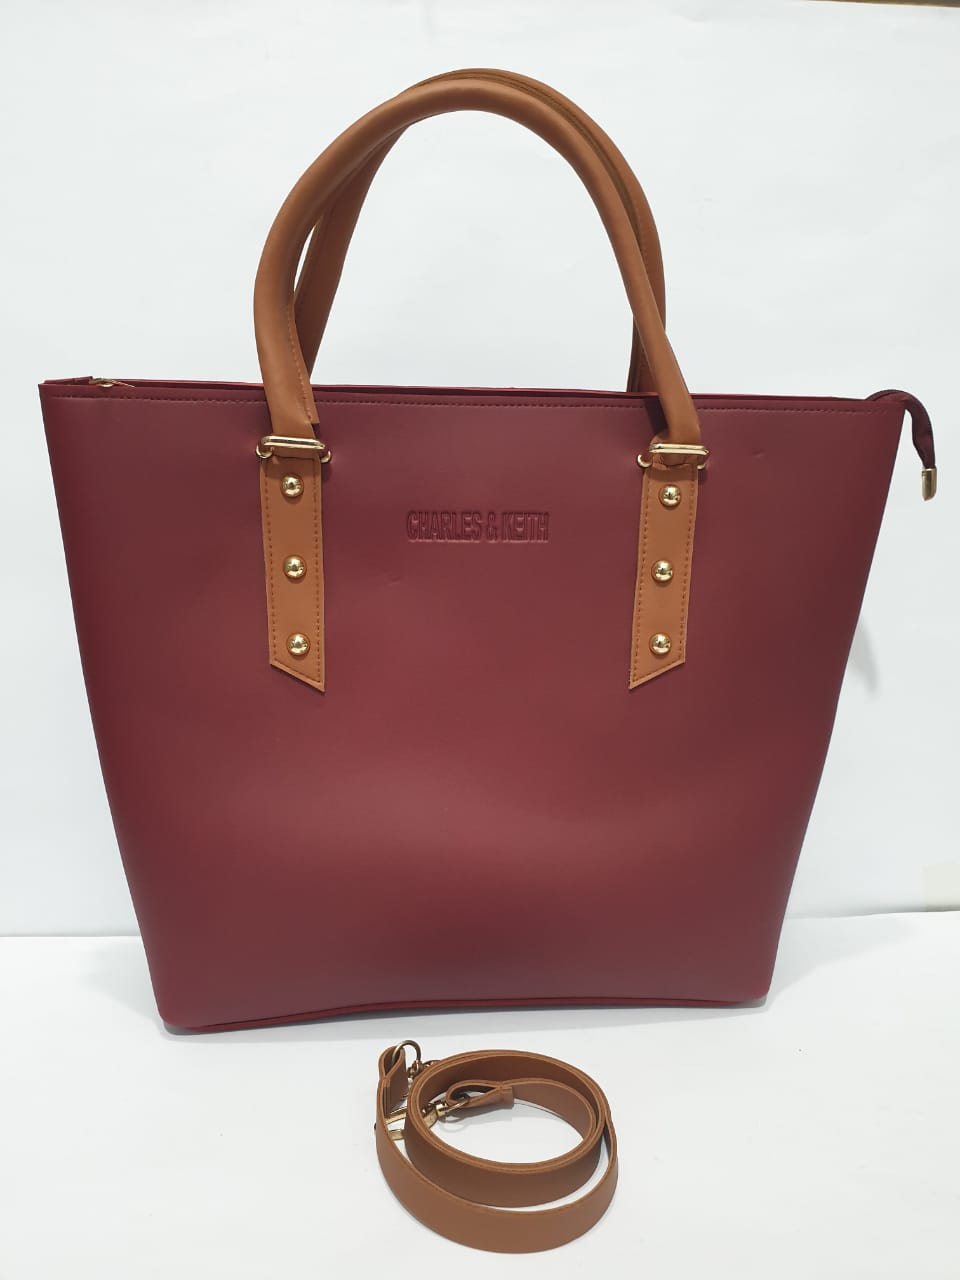 EMLOVEX Ladies handbags – BROWN